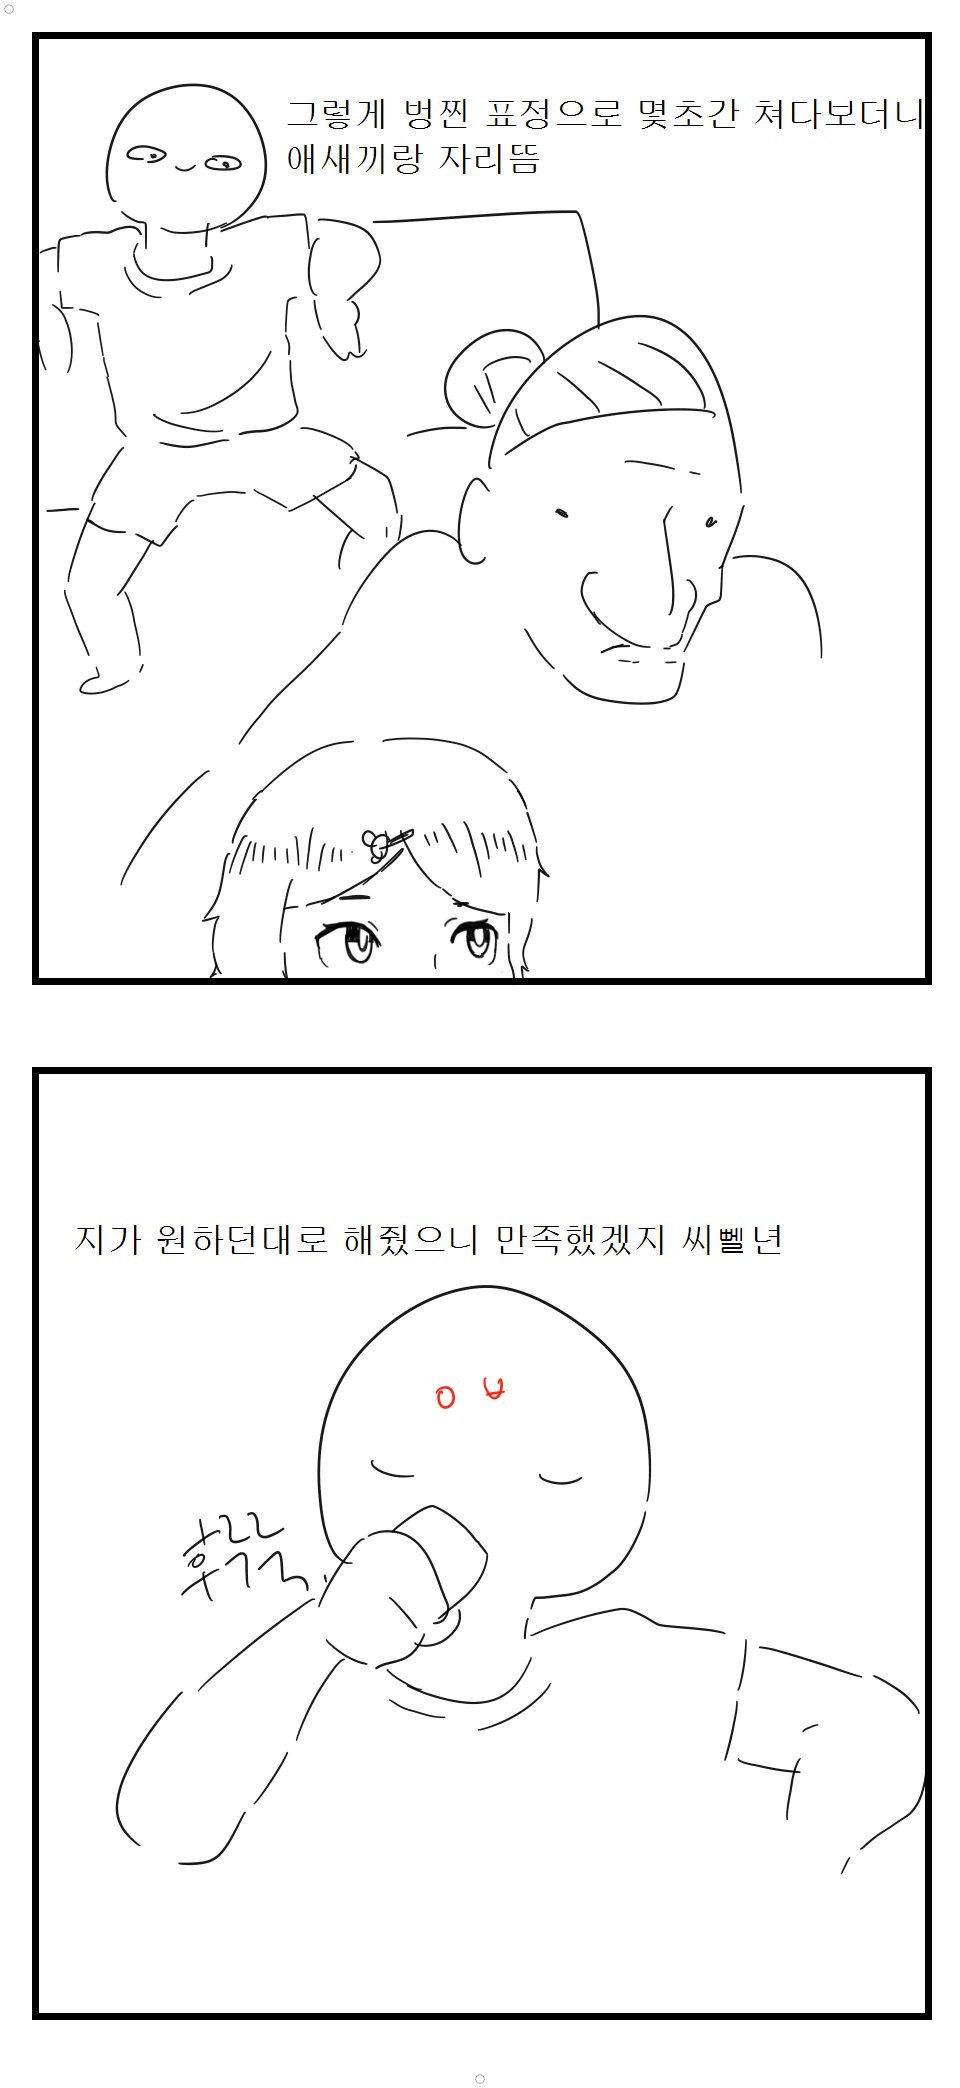 예전에 레전드 쉰김치 아줌매미 놀래킨 썰만화 재밌네 (다른만화) ㅋㅠㅋㅋ 이미지 #2